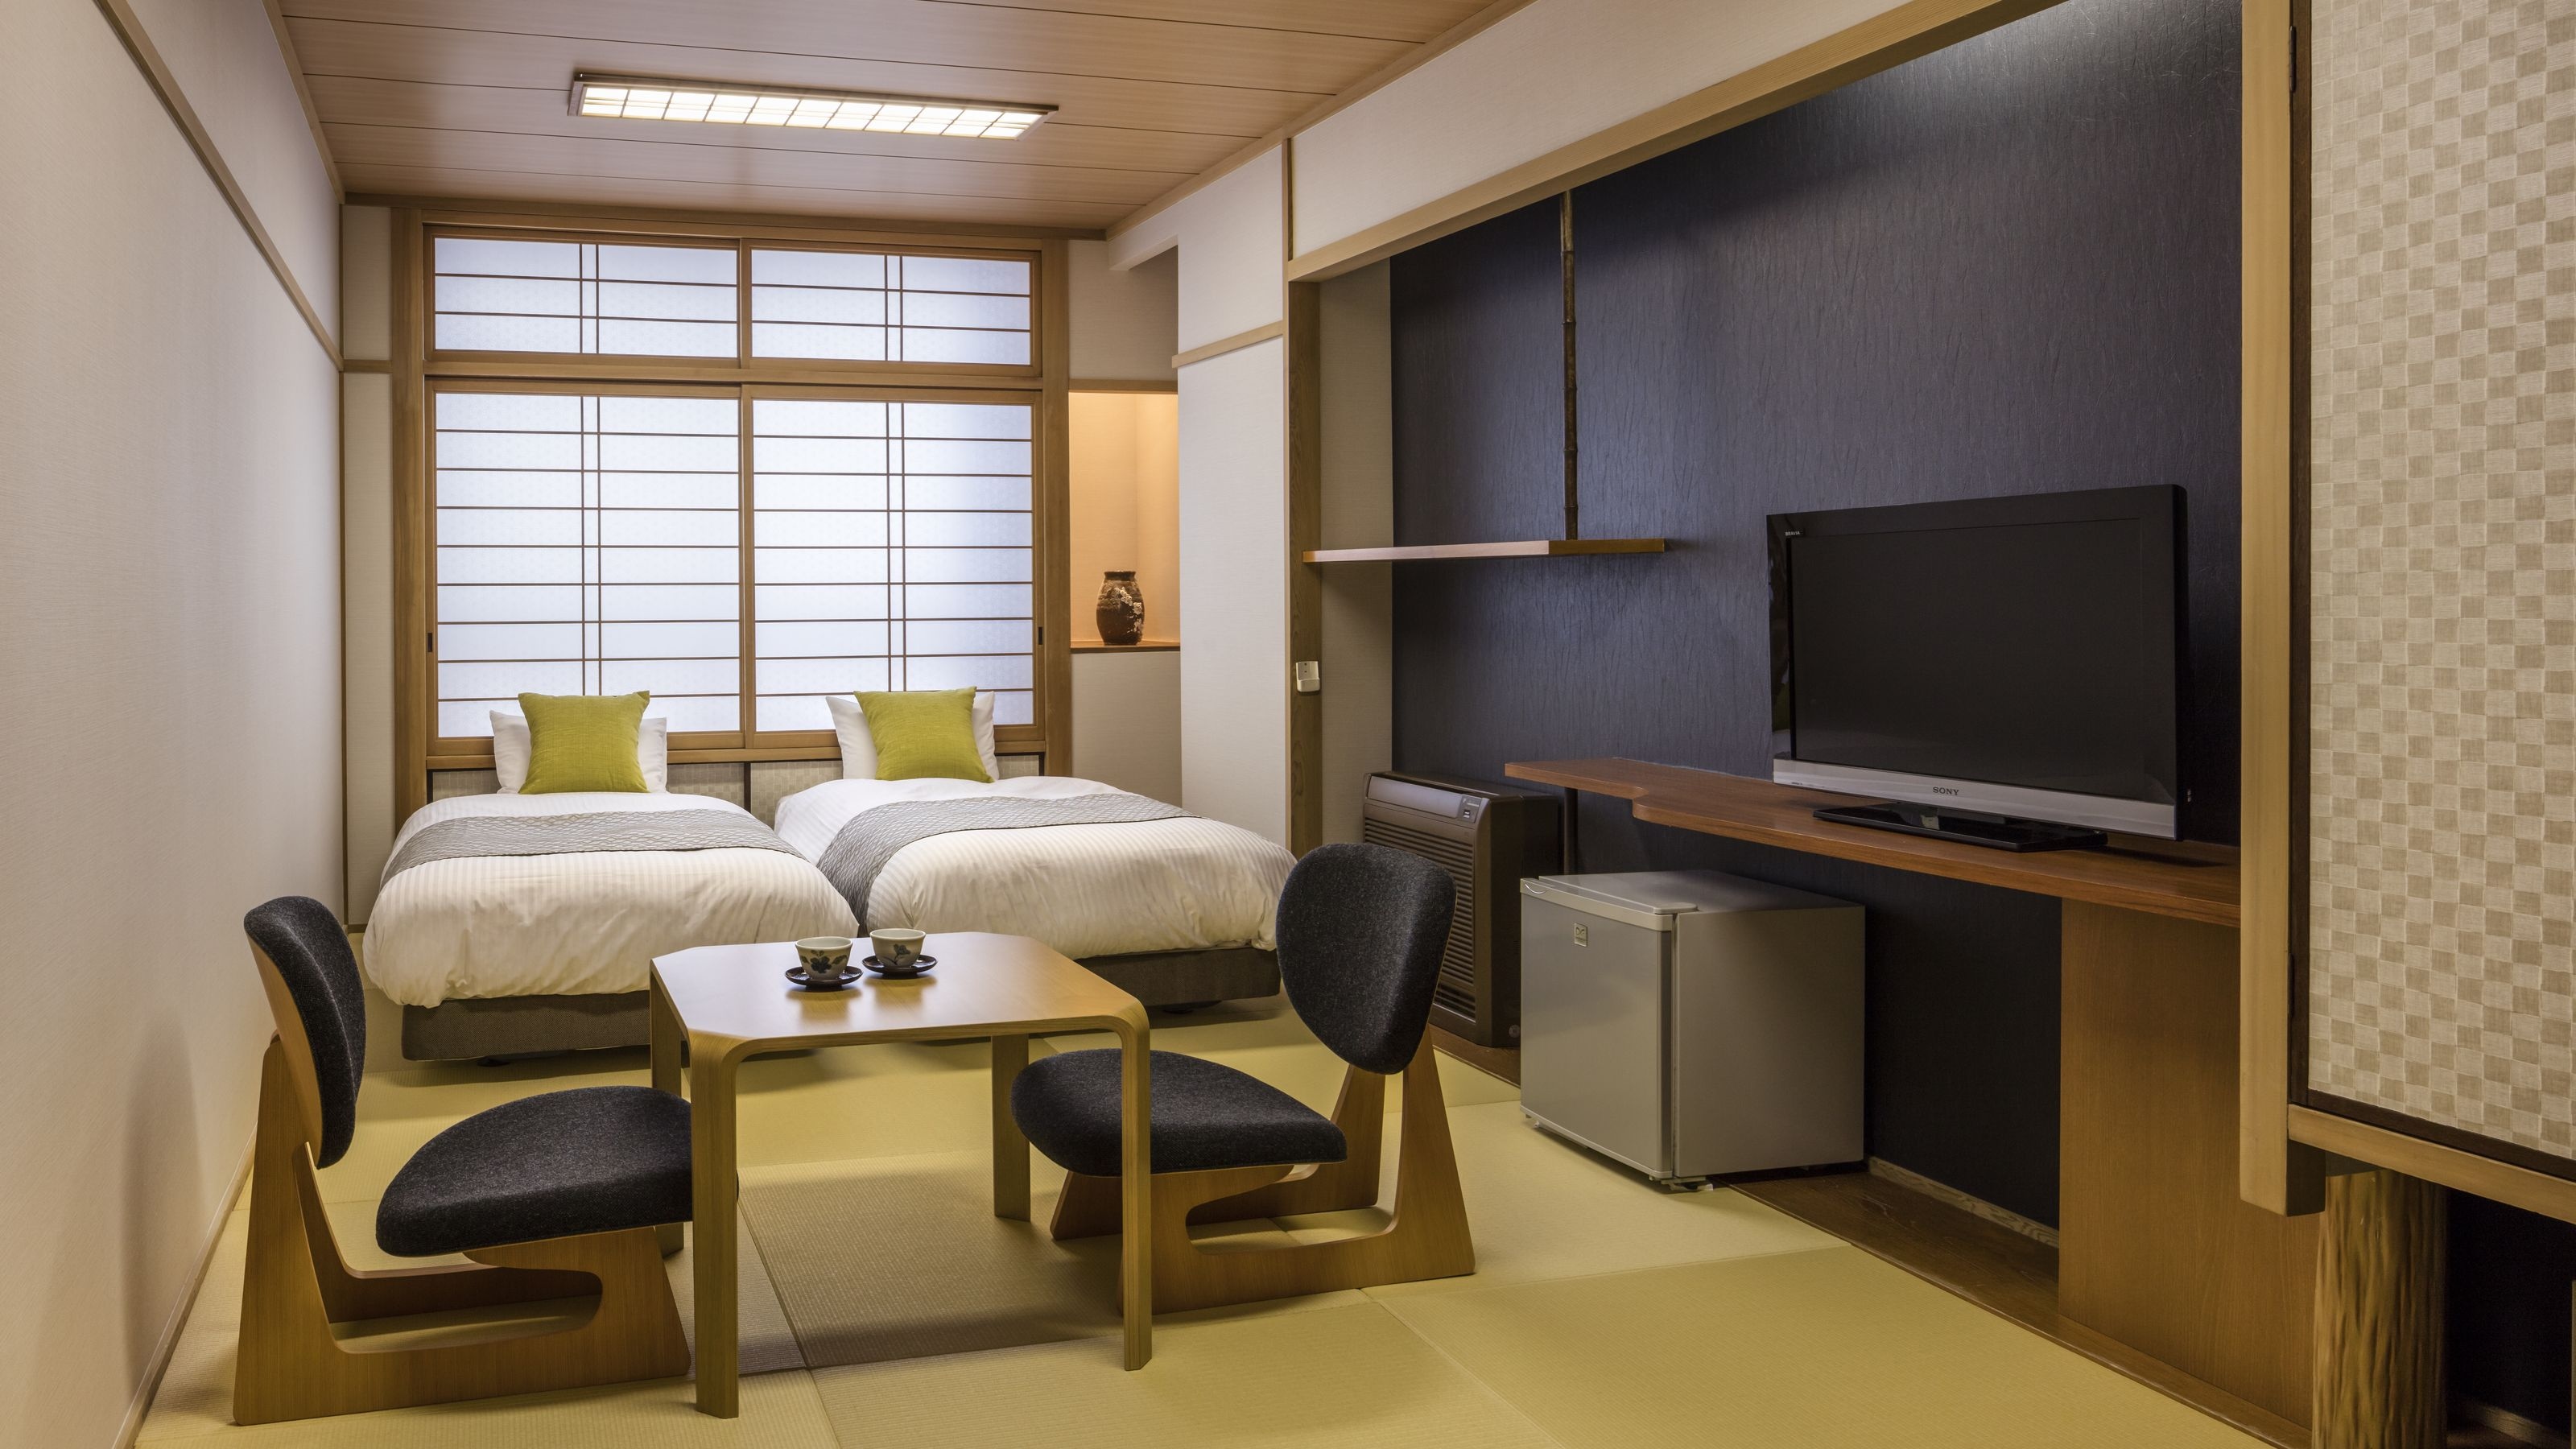 Gambar kamar twin Jepang modern ◆ Tempat tidur twin ◆ Cocok untuk perjalanan bisnis ♪